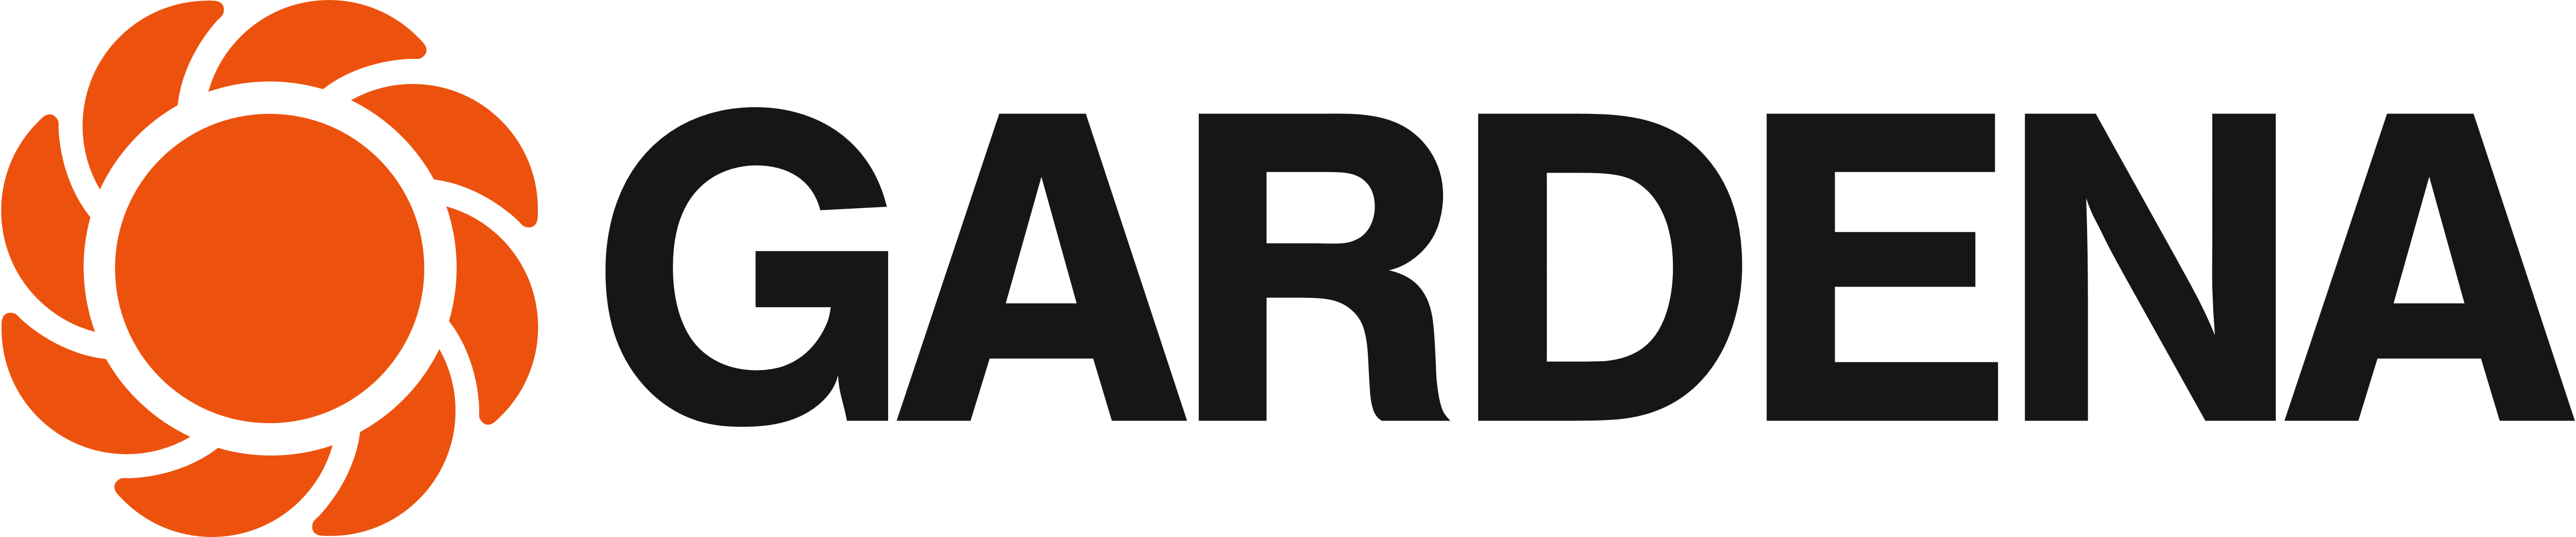 Gardena_logo